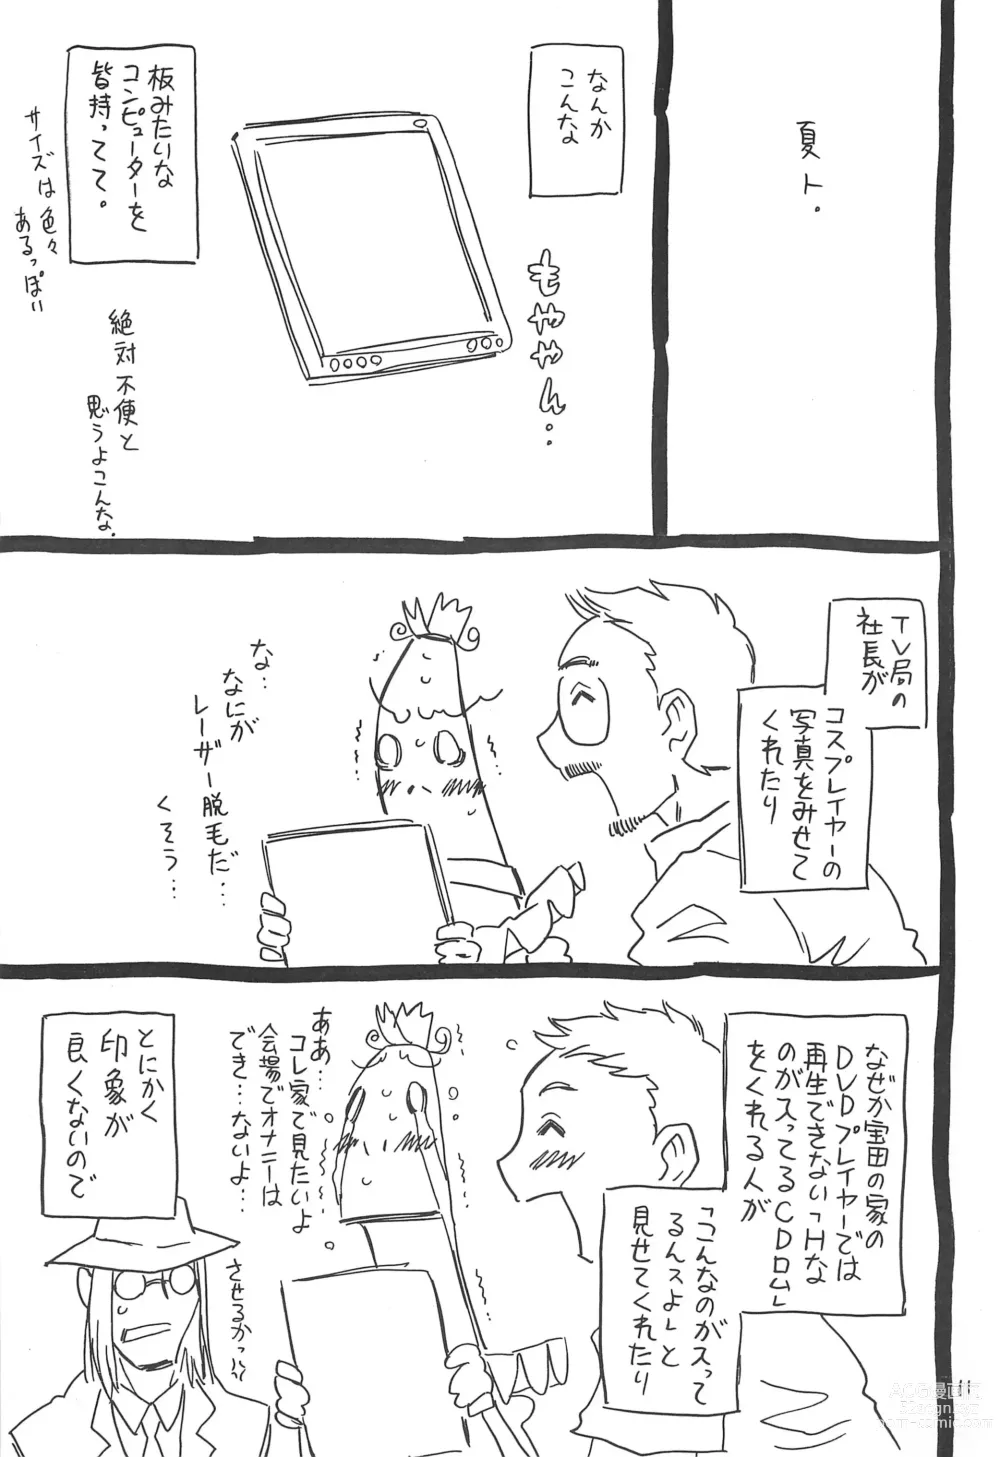 Page 11 of doujinshi Hyakka Shokkou Atopink